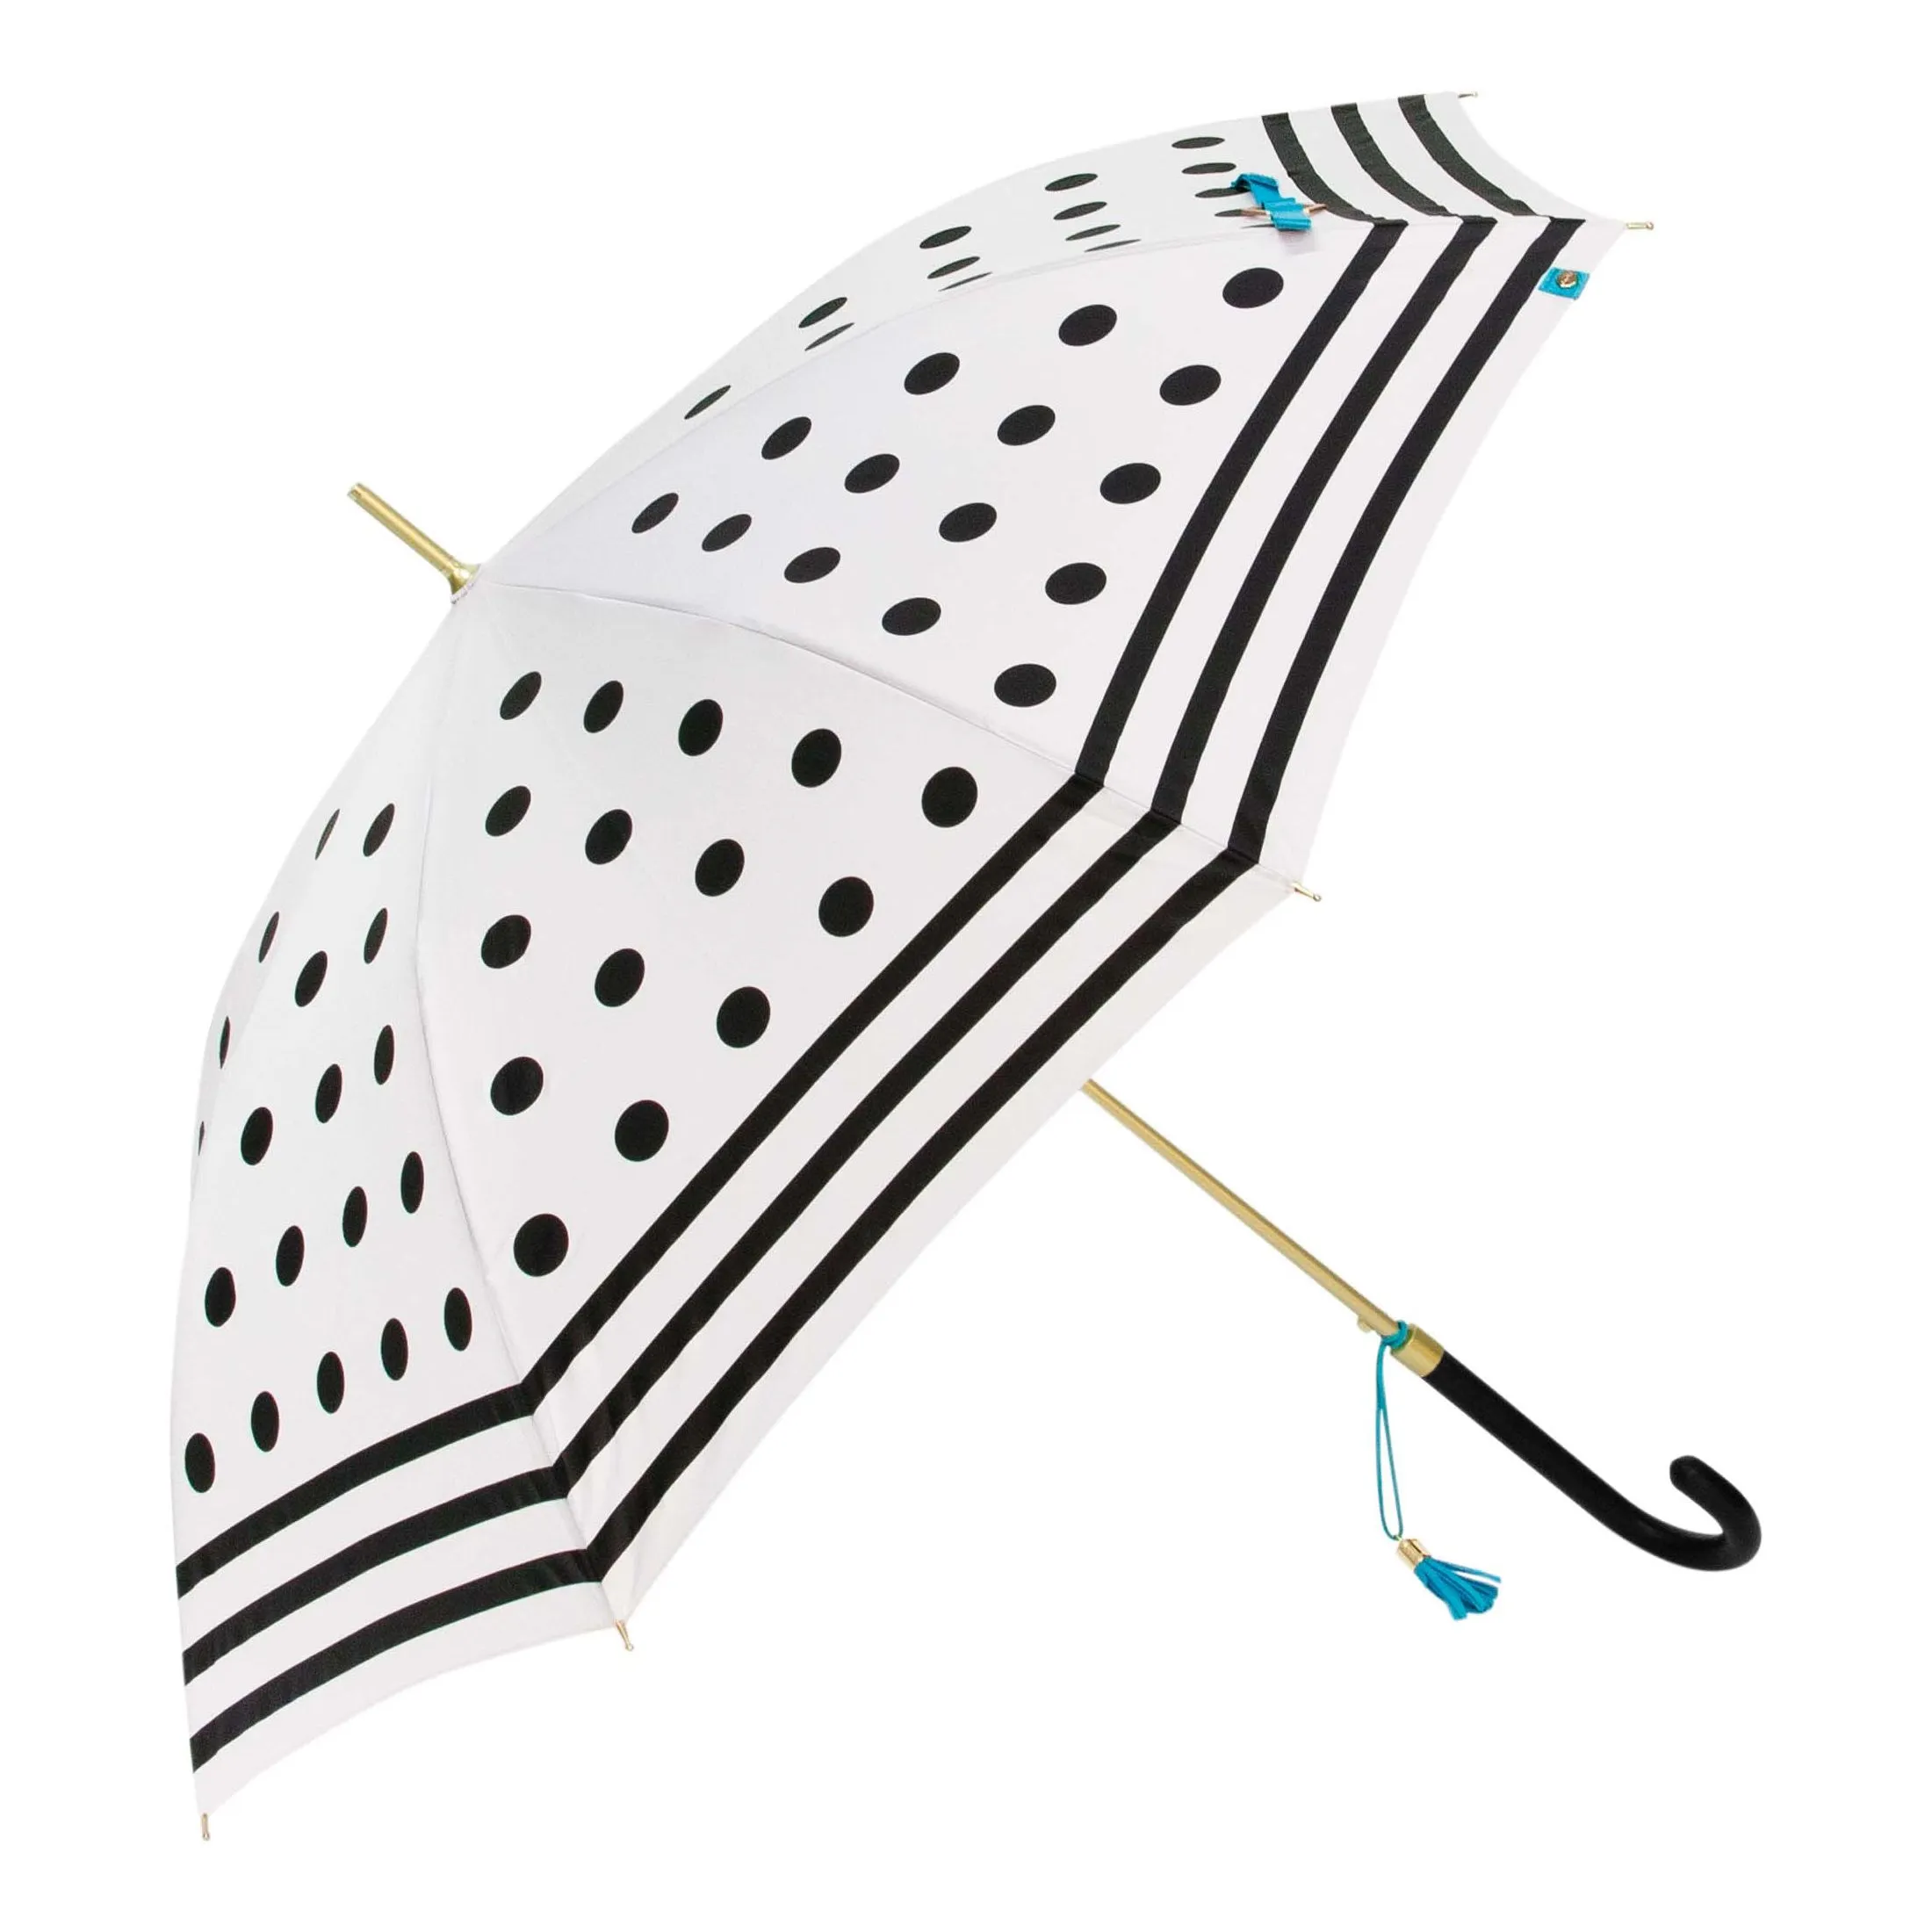 Paraguas largo de mujer transparente aniviento